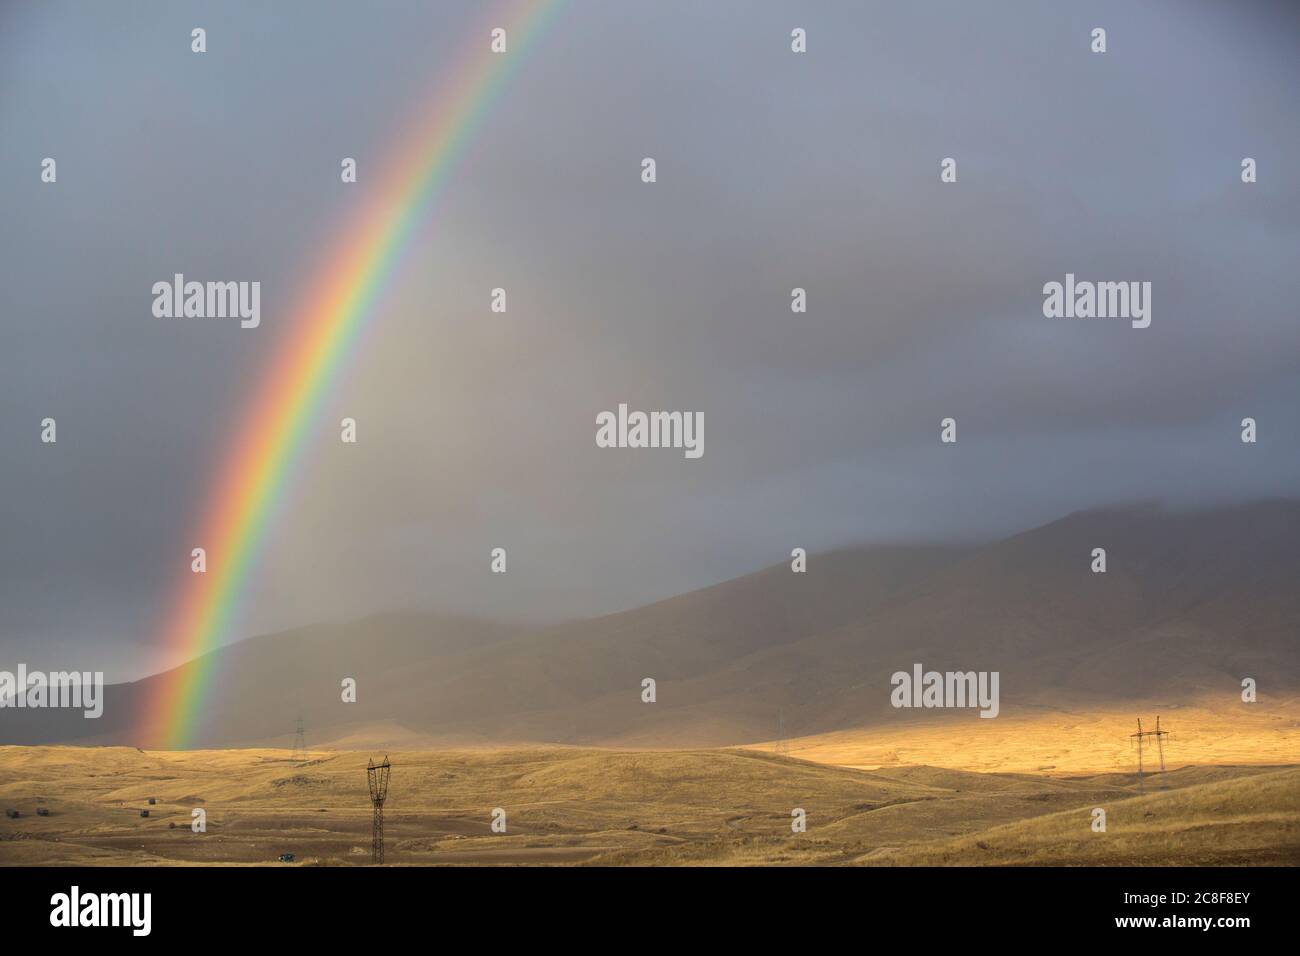 Ein doppelter Regenbogen zieht sich durch die Landschaft auf der Straße von Goris nach Shaki in der südwestlichen Ecke Armeniens. Stockfoto